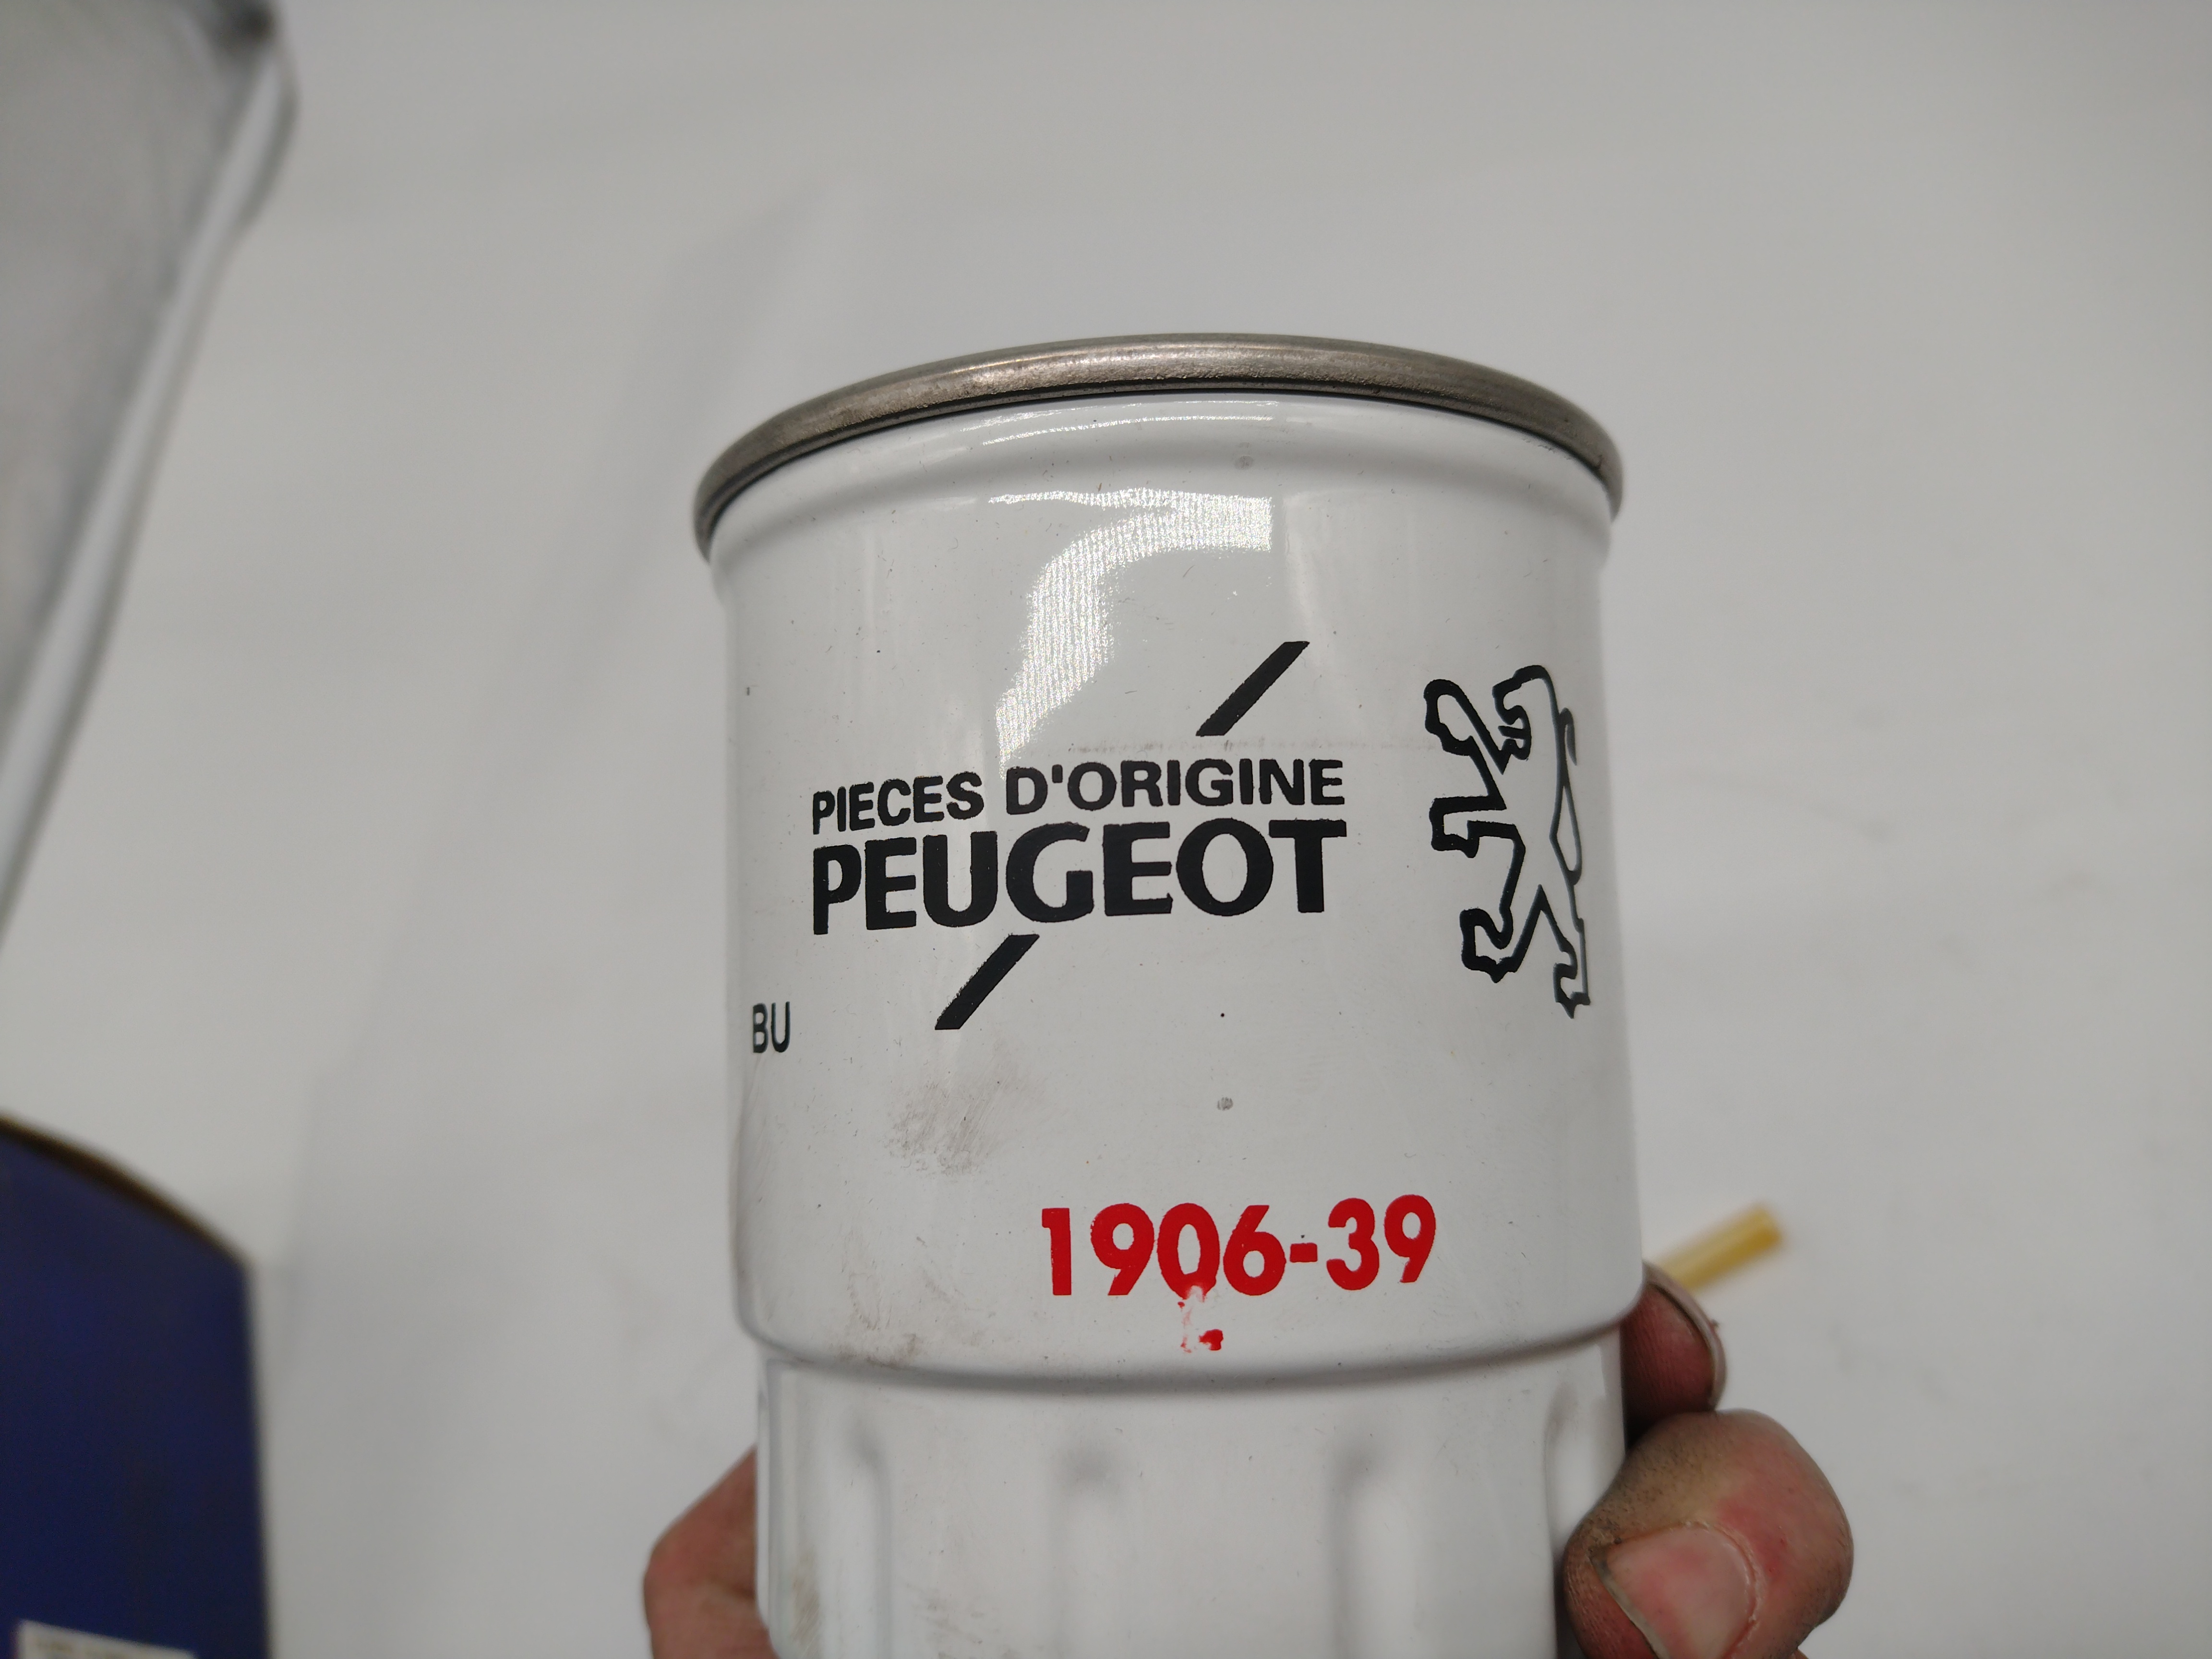 Peugeot Kraftstofffilter 190639 Delphi 906 HDF906 NEU NOS NEW